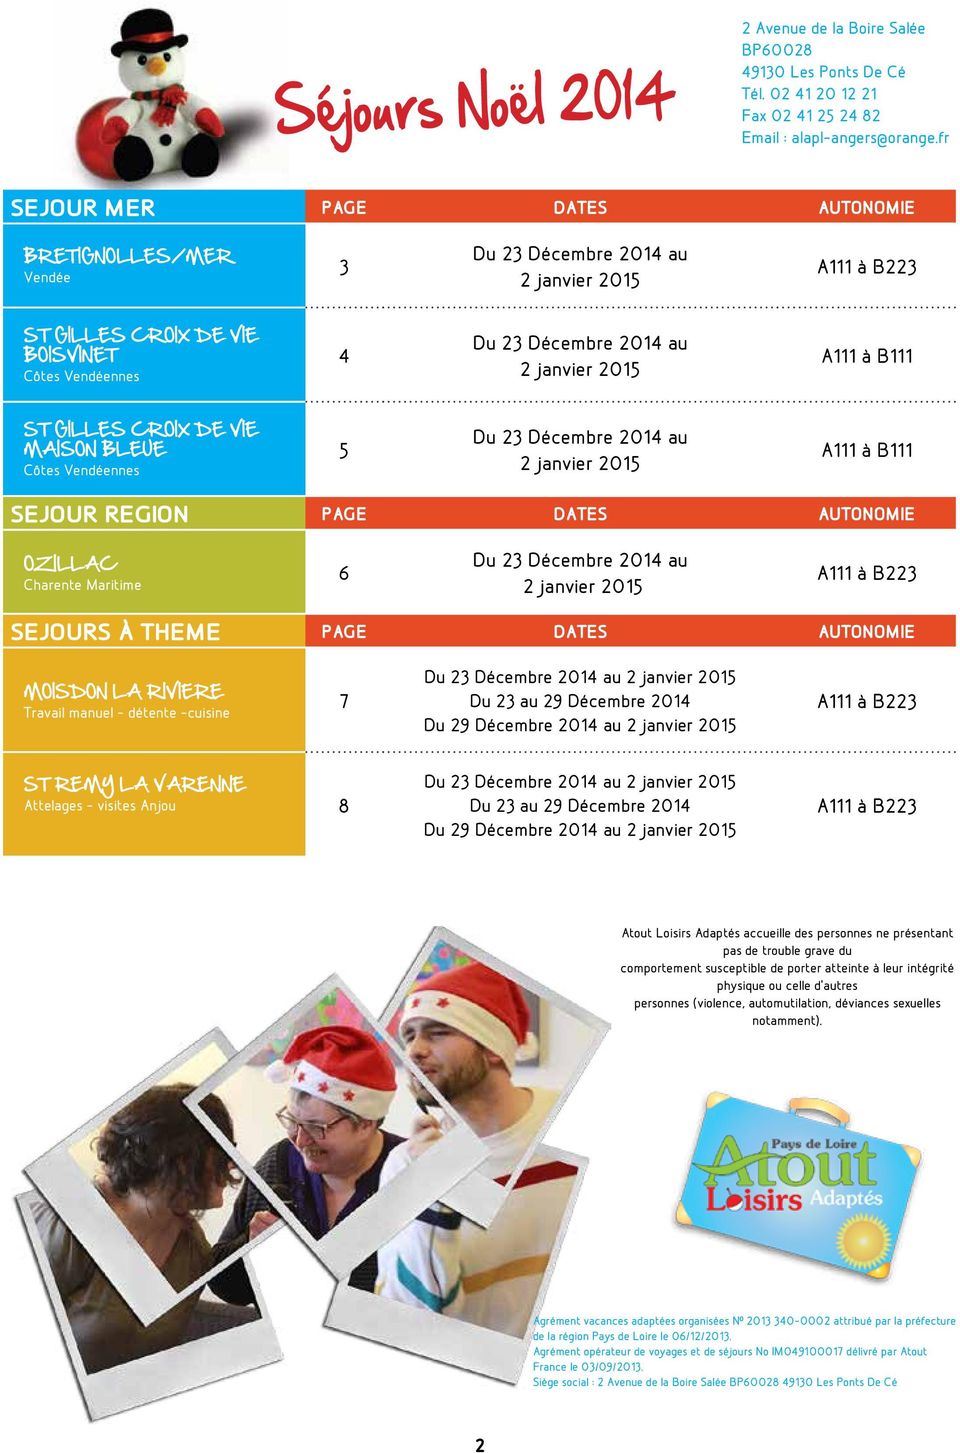 MAISON BLEUE Côtes Vendéennes 5 Du 23 Décembre 2014 au A111 à B111 SEJOUR REGION Page Dates AUTONOMIE OZILLAC Charente Maritime 6 Du 23 Décembre 2014 au SEJOURS à THEME Page Dates AUTONOMIE MOISDON